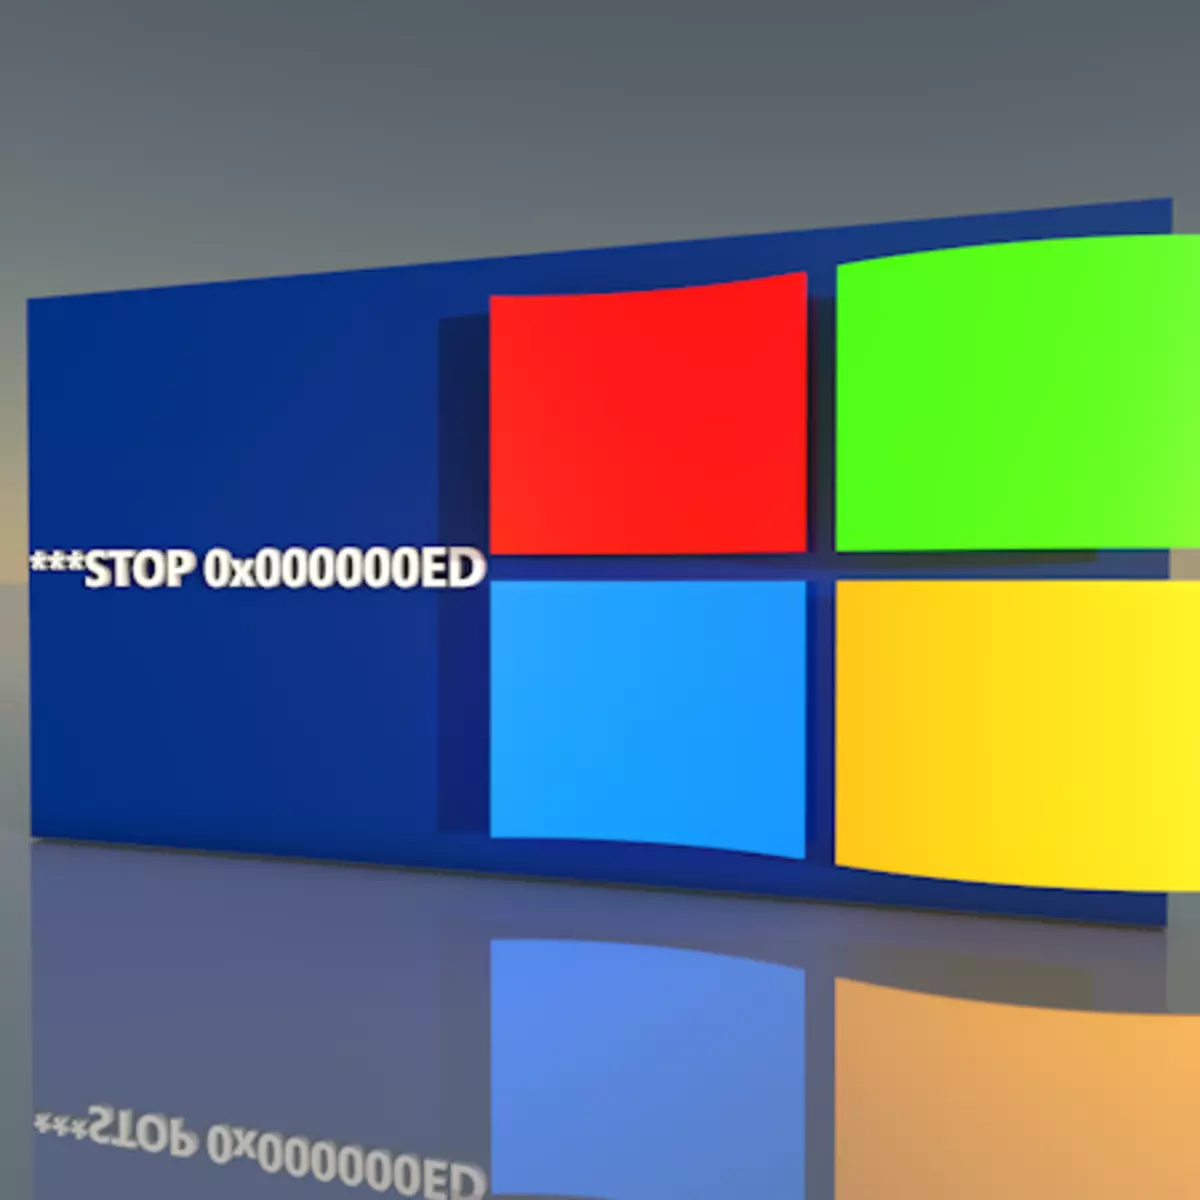 Ungalungisa njani impazamo "ye-Stop 0x000000Eed" xa unyusa iWindows XP